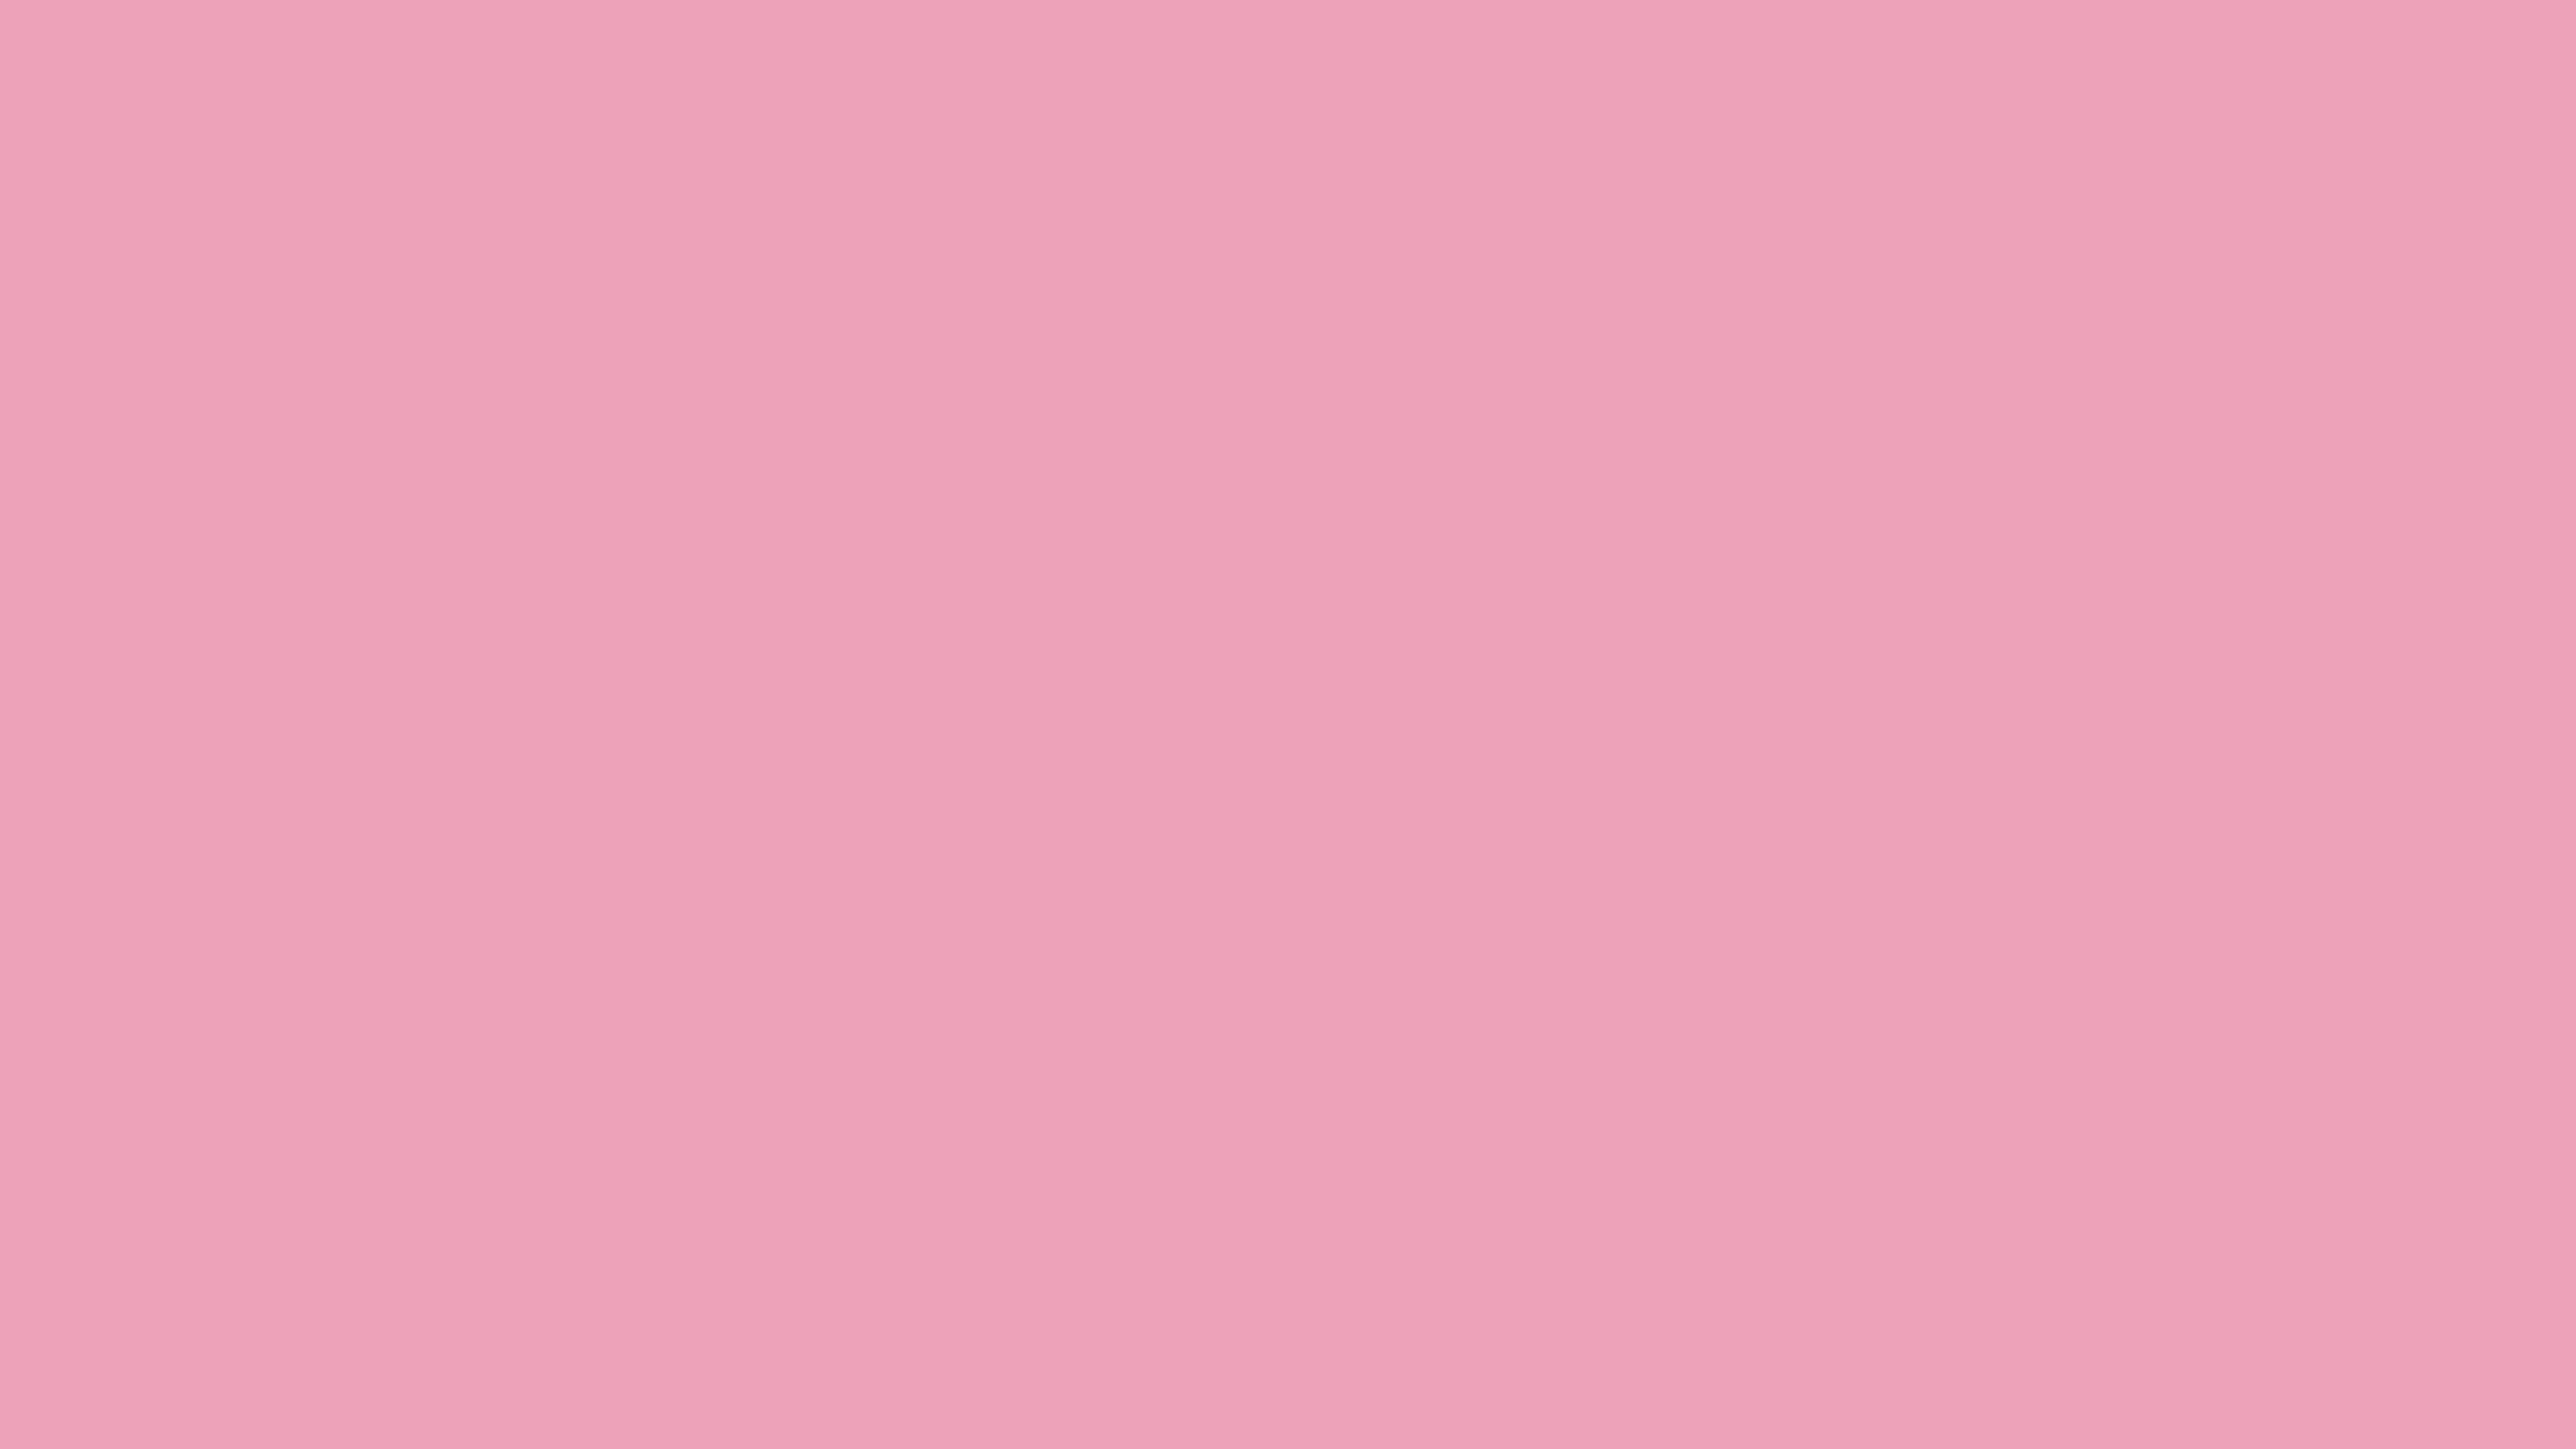 70 10 07. Ffb6c1 цвет. Светло розовый цвет. Розовый фон пастельный цвет. Пастельный розовый.